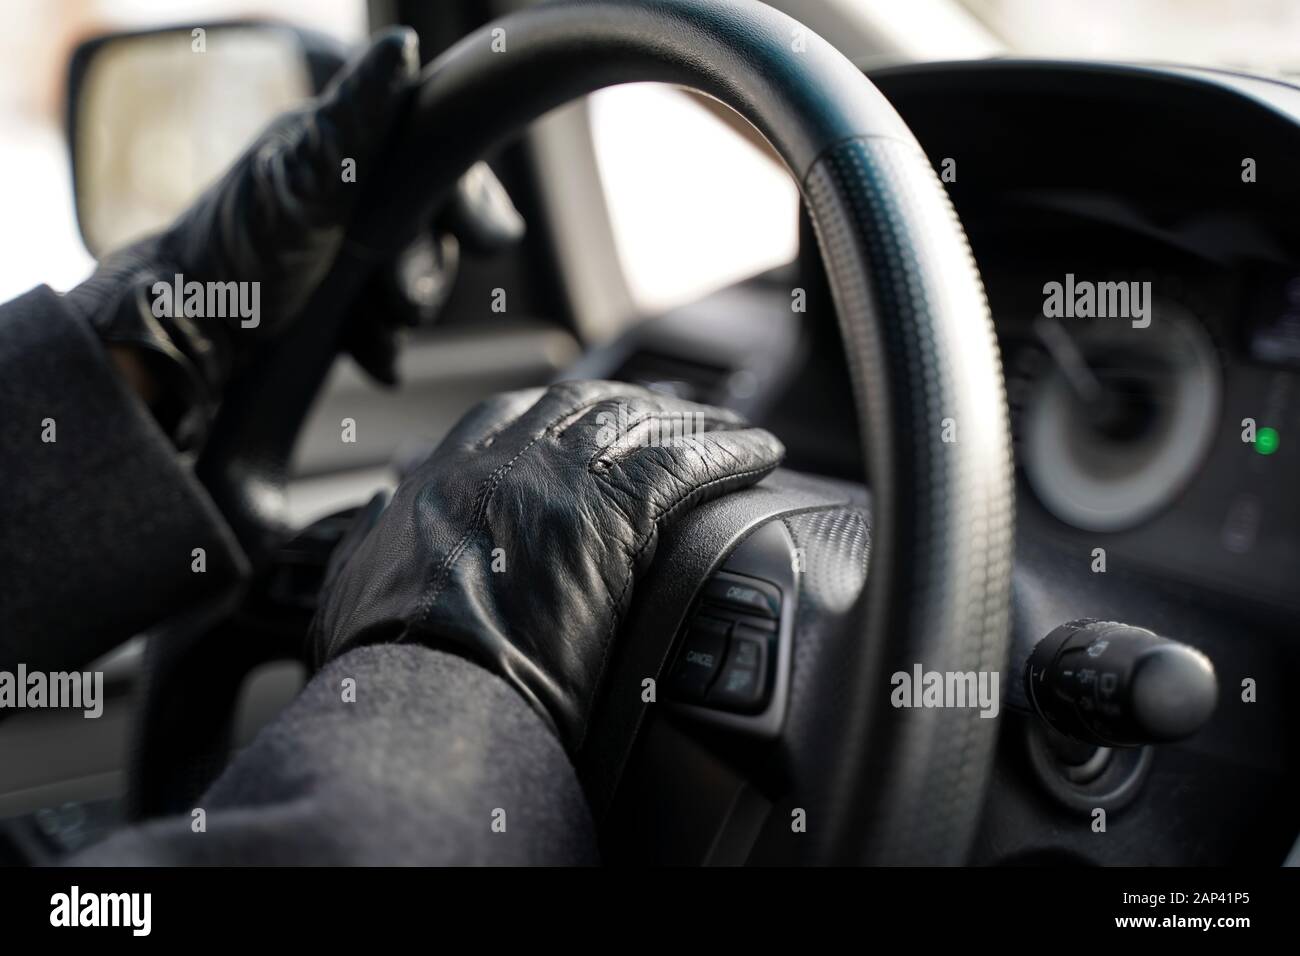 Hände in Lederhandschuhen mit Hupe fahren, indem man das Lenkrad des Fahrzeugs herunterdrückt. Stockfoto